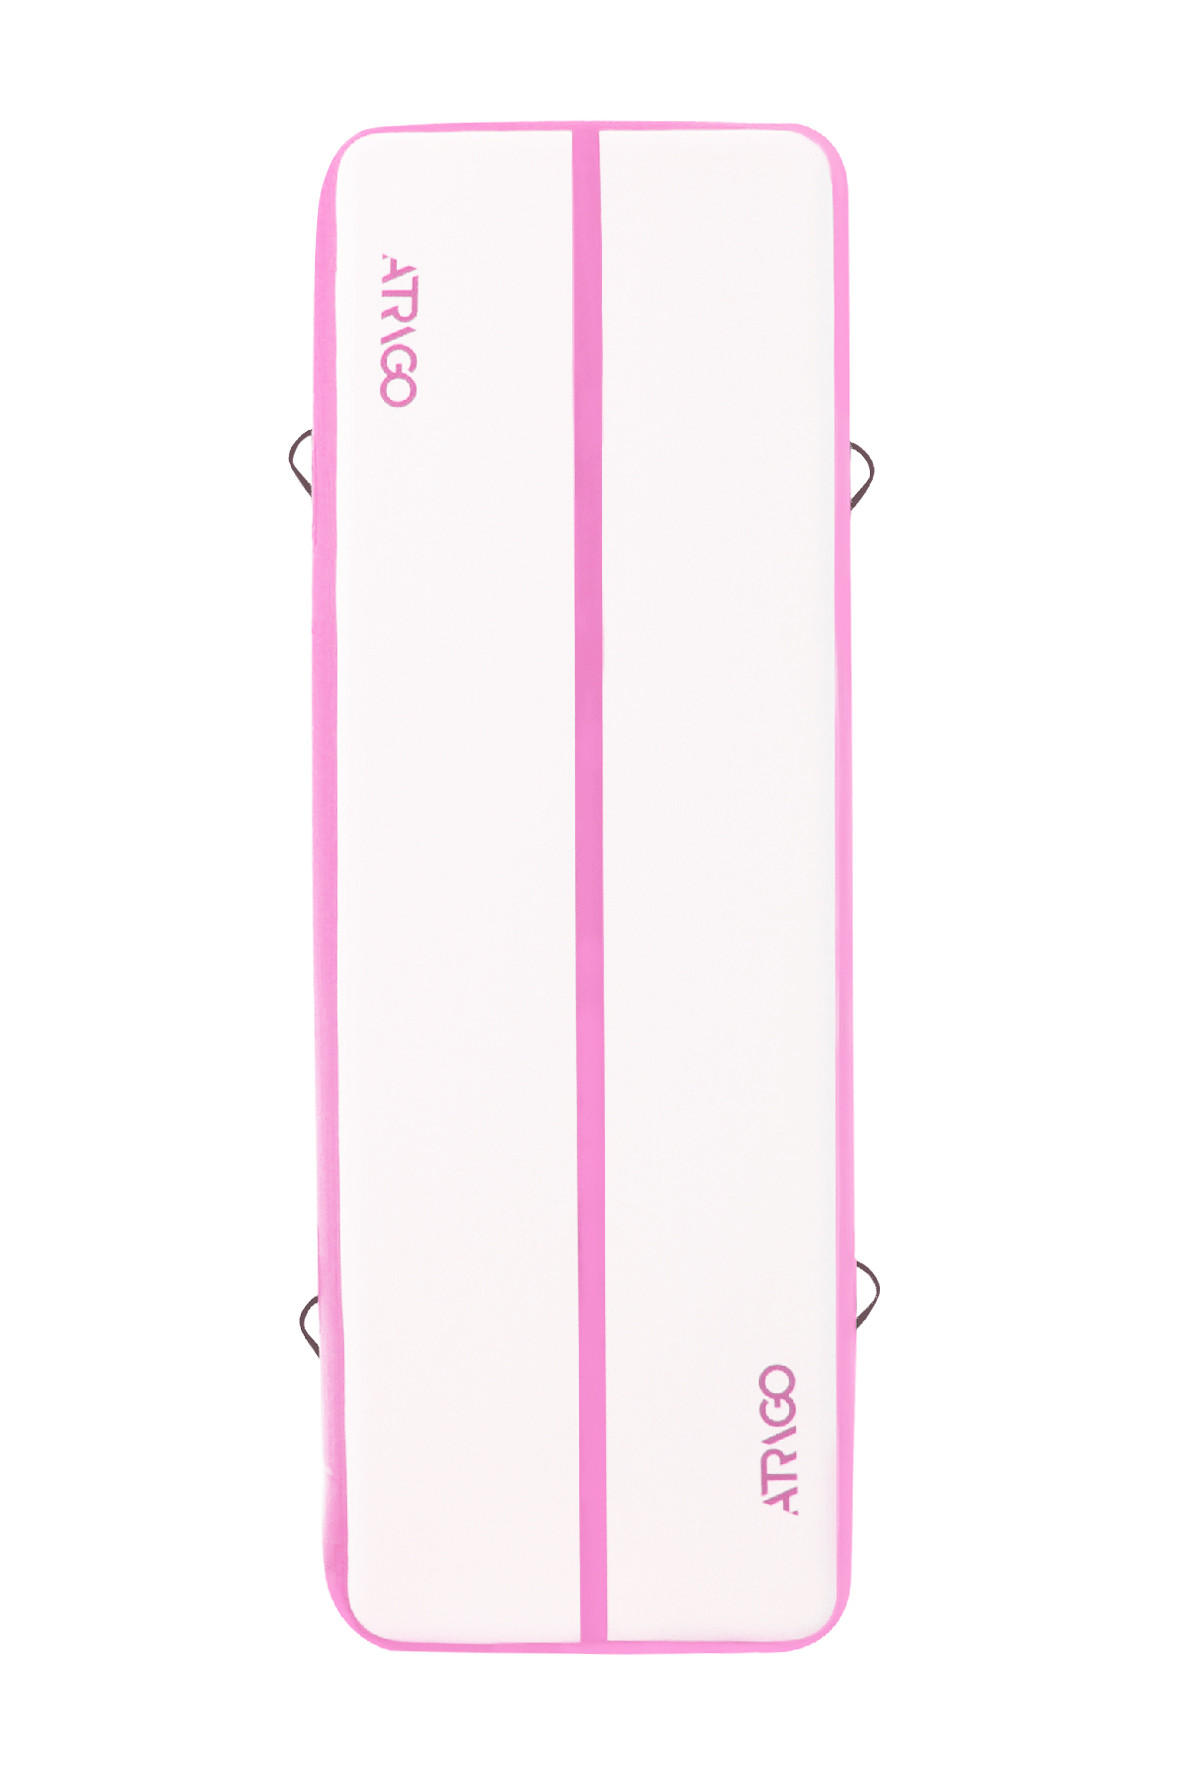 GYMNASTIKMATTE aufblasbar Rosa, Weiß  - Rosa/Weiß, KONVENTIONELL, Kunststoff (300/100/20cm) - Atrigo